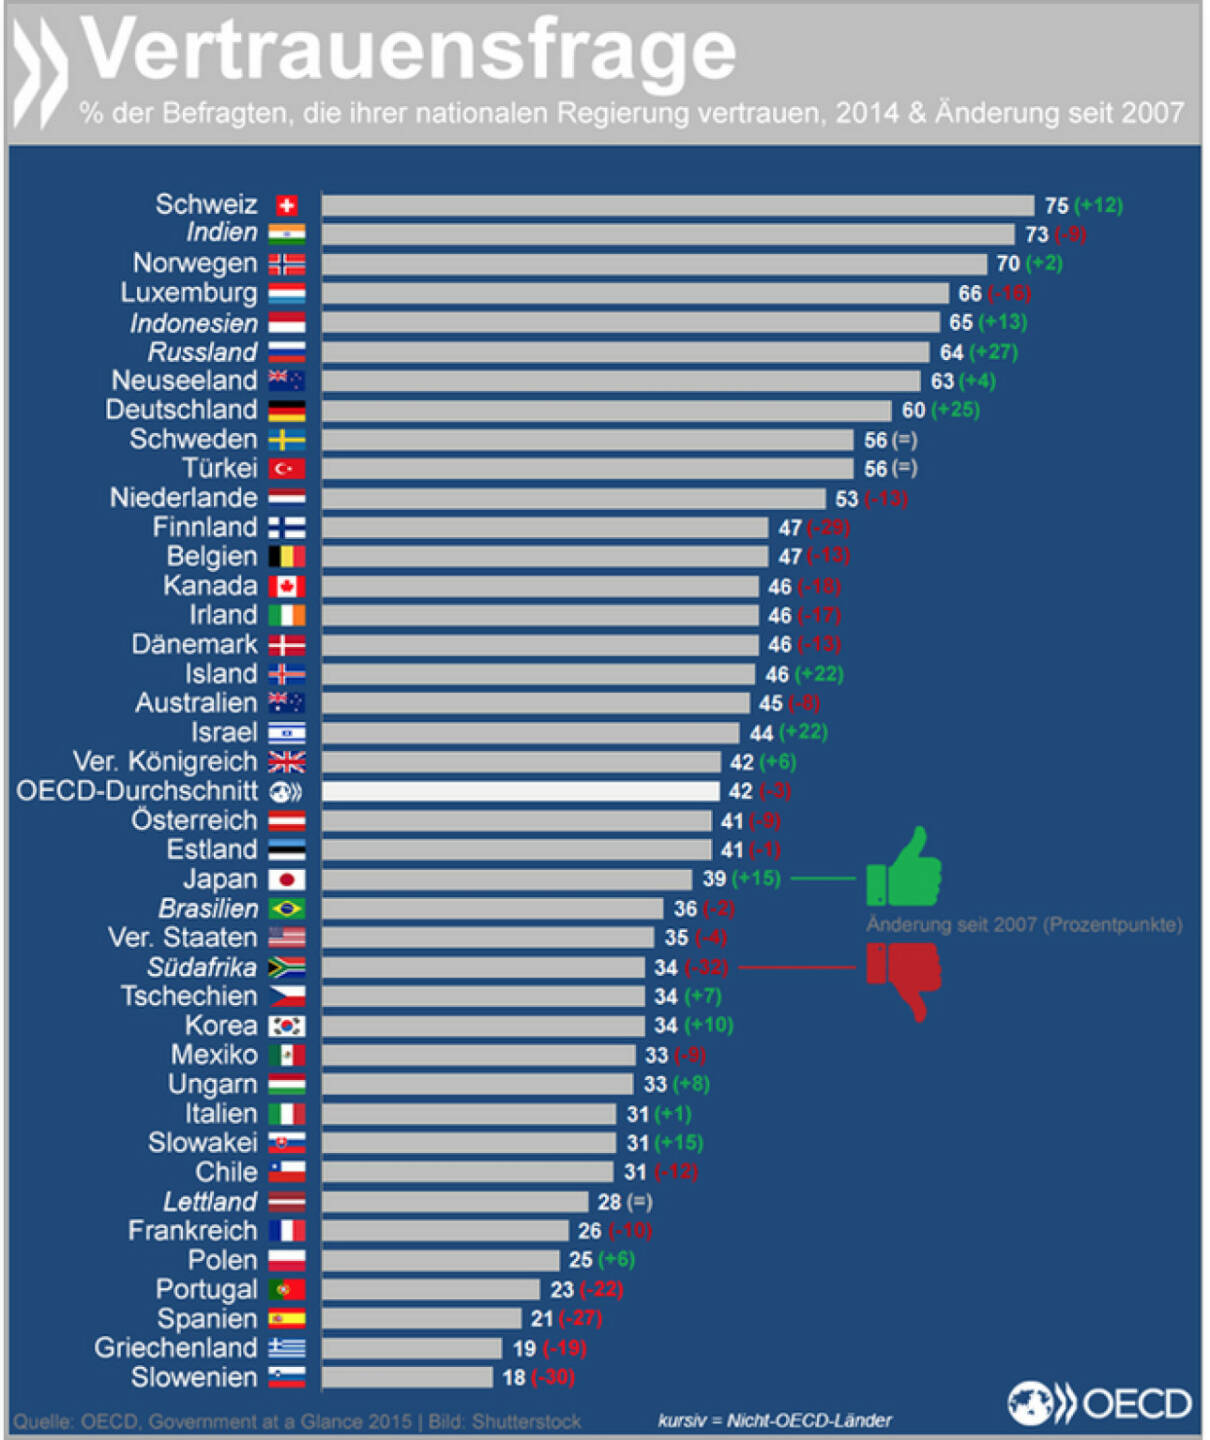 Vertrauensfrage: Das Vertrauen in nationale Regierungen ist heute in vielen OECD-Ländern noch immer niedriger als vor der Krise. Die besten Werte erzielt die Schweizer Regierung mit einem Zuspruch von 75 Prozent. Den höchsten Vertrauenszuwachs seit 2007 hatte innerhalb der OECD Deutschland.
Mehr zum Thema findet Ihr unter: http://bit.ly/1MapKA4 (S. 156f.)